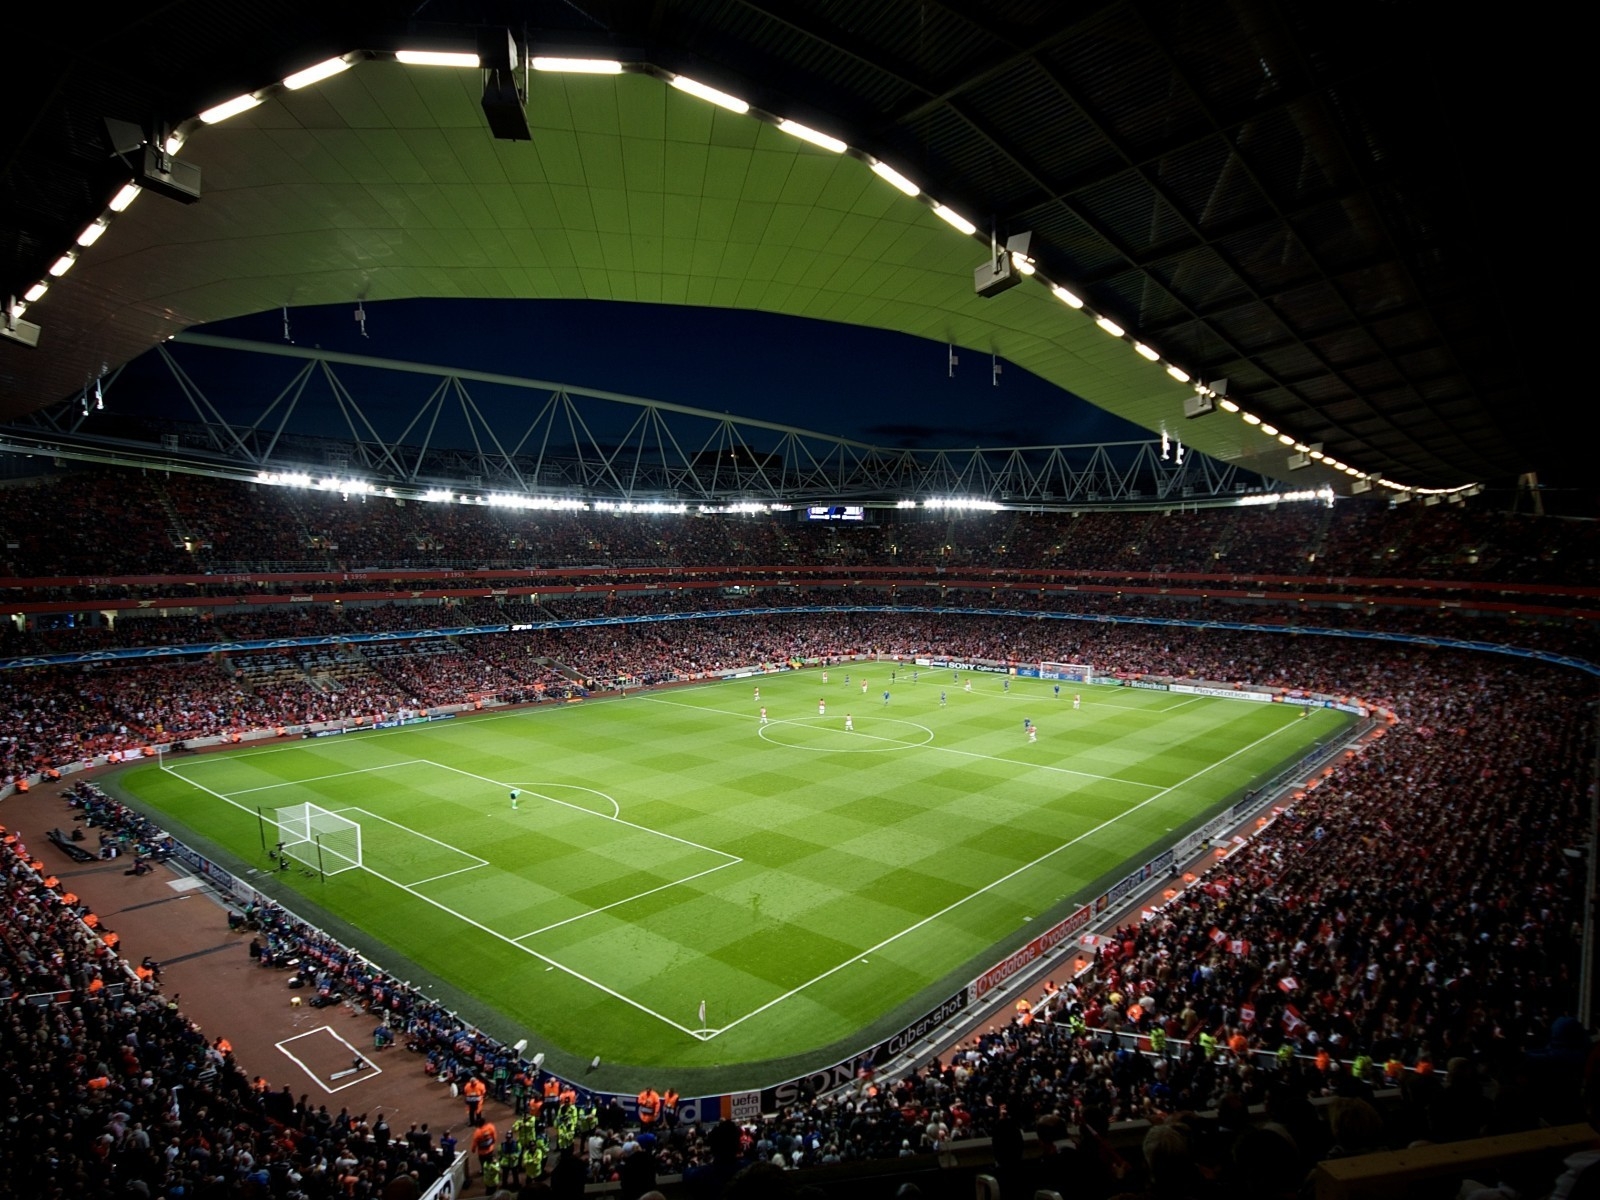 Stadium in Emirates for 1600 x 1200 resolution